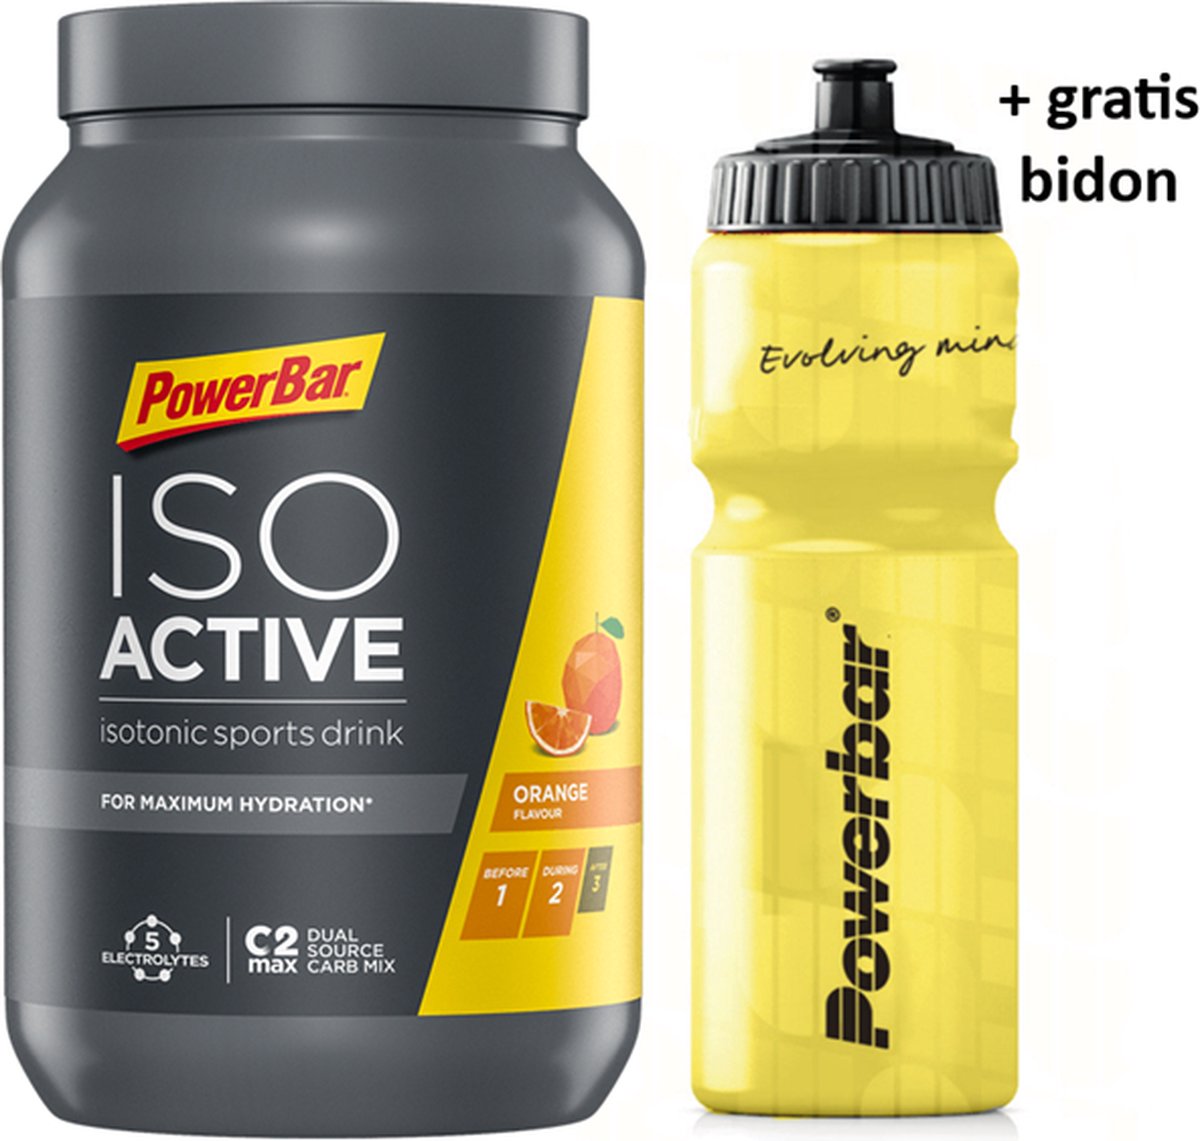 Powerbar IsoActive + GRATIS Powerbar bidon - sportdrank - 20 liter - Orange